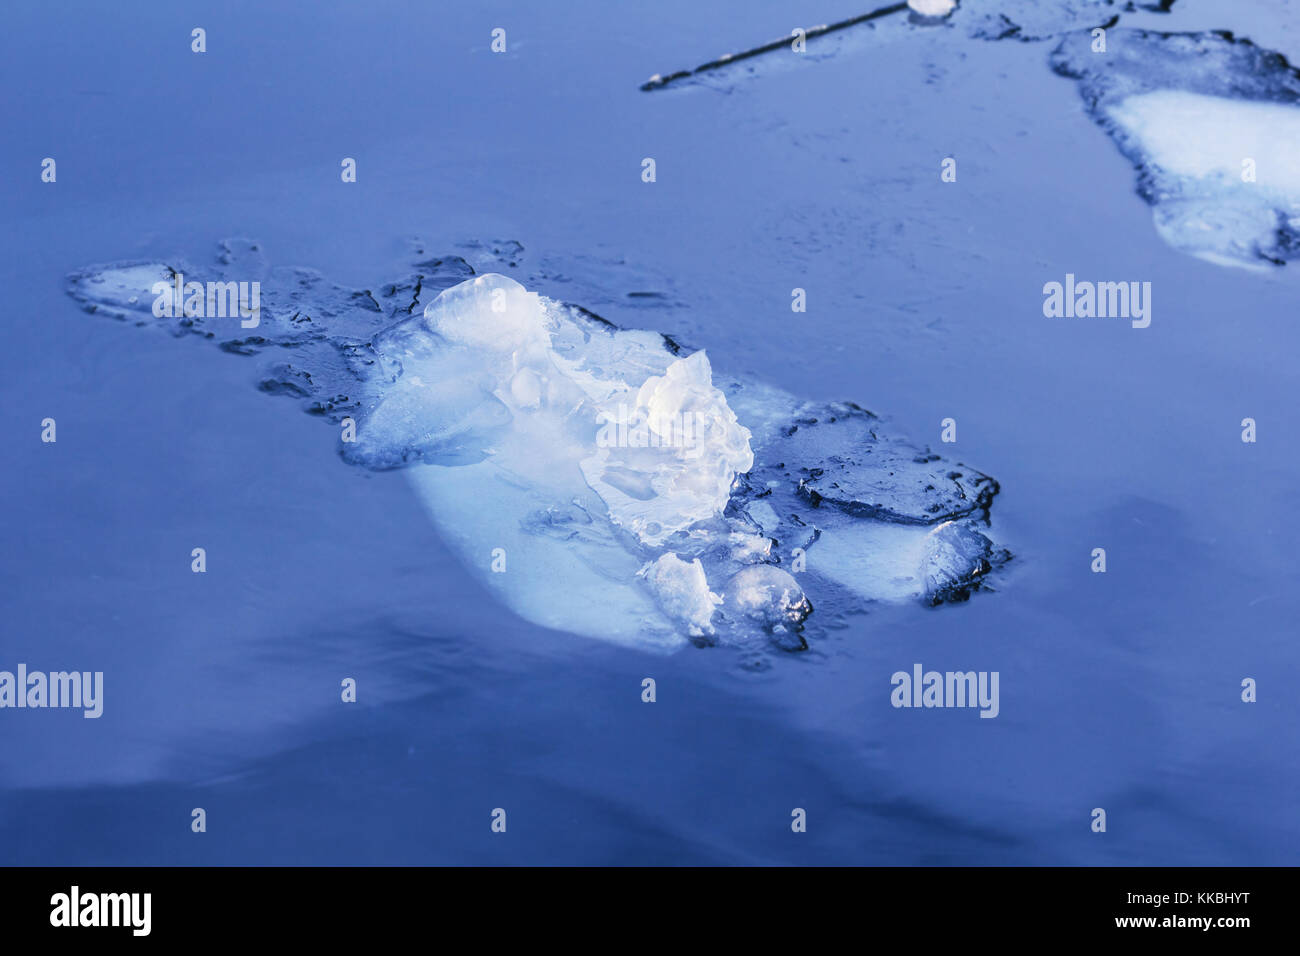 Grande glace claire sur fond bleu de l'eau d'hiver Banque D'Images